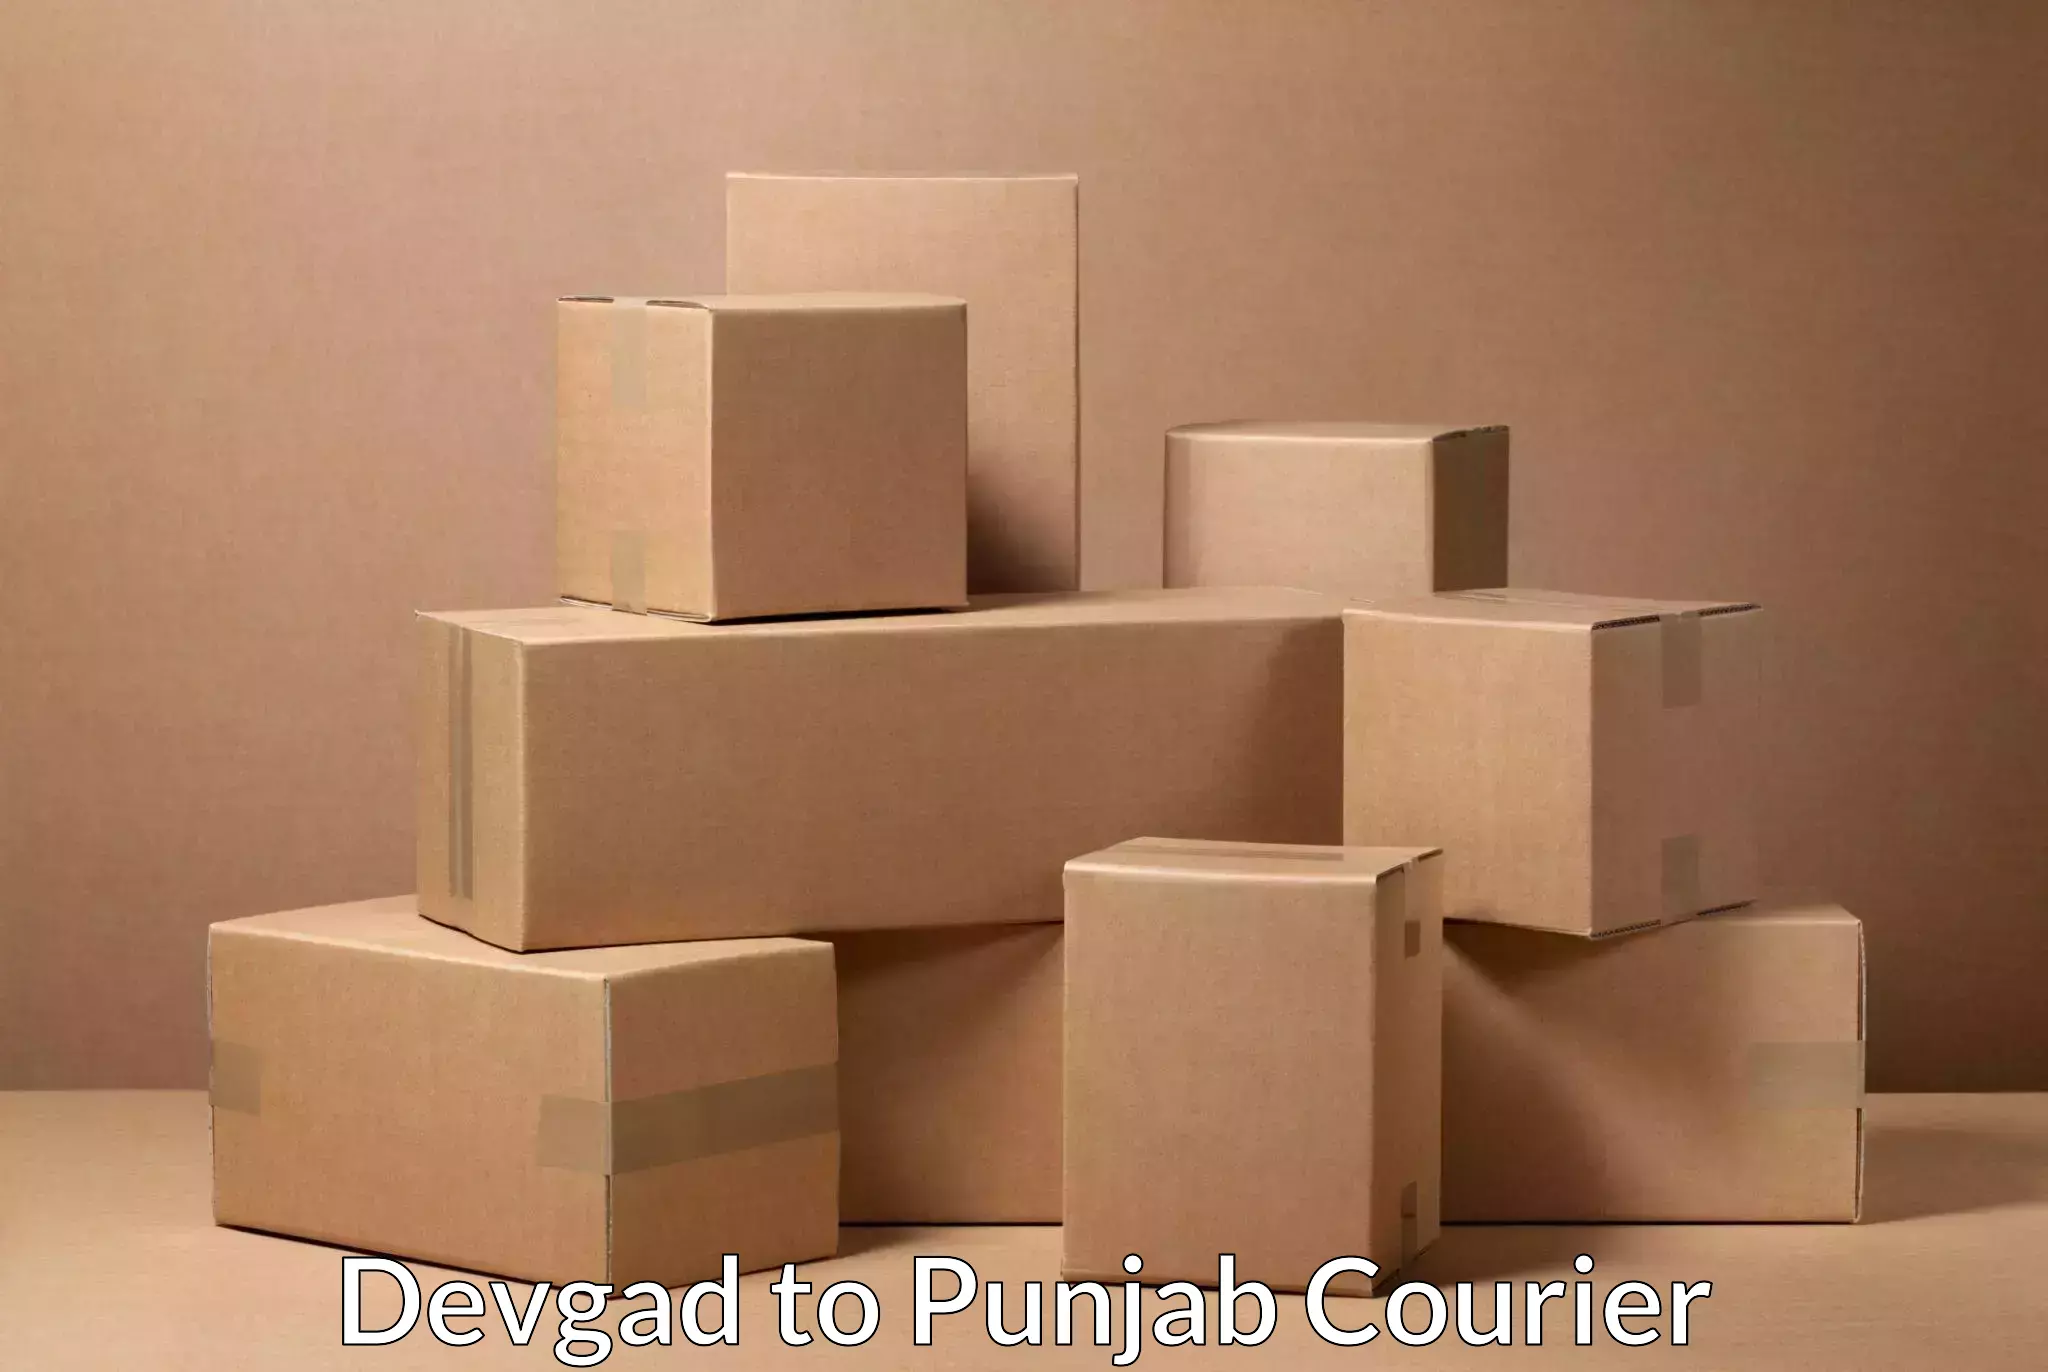 Comprehensive parcel tracking in Devgad to Punjab